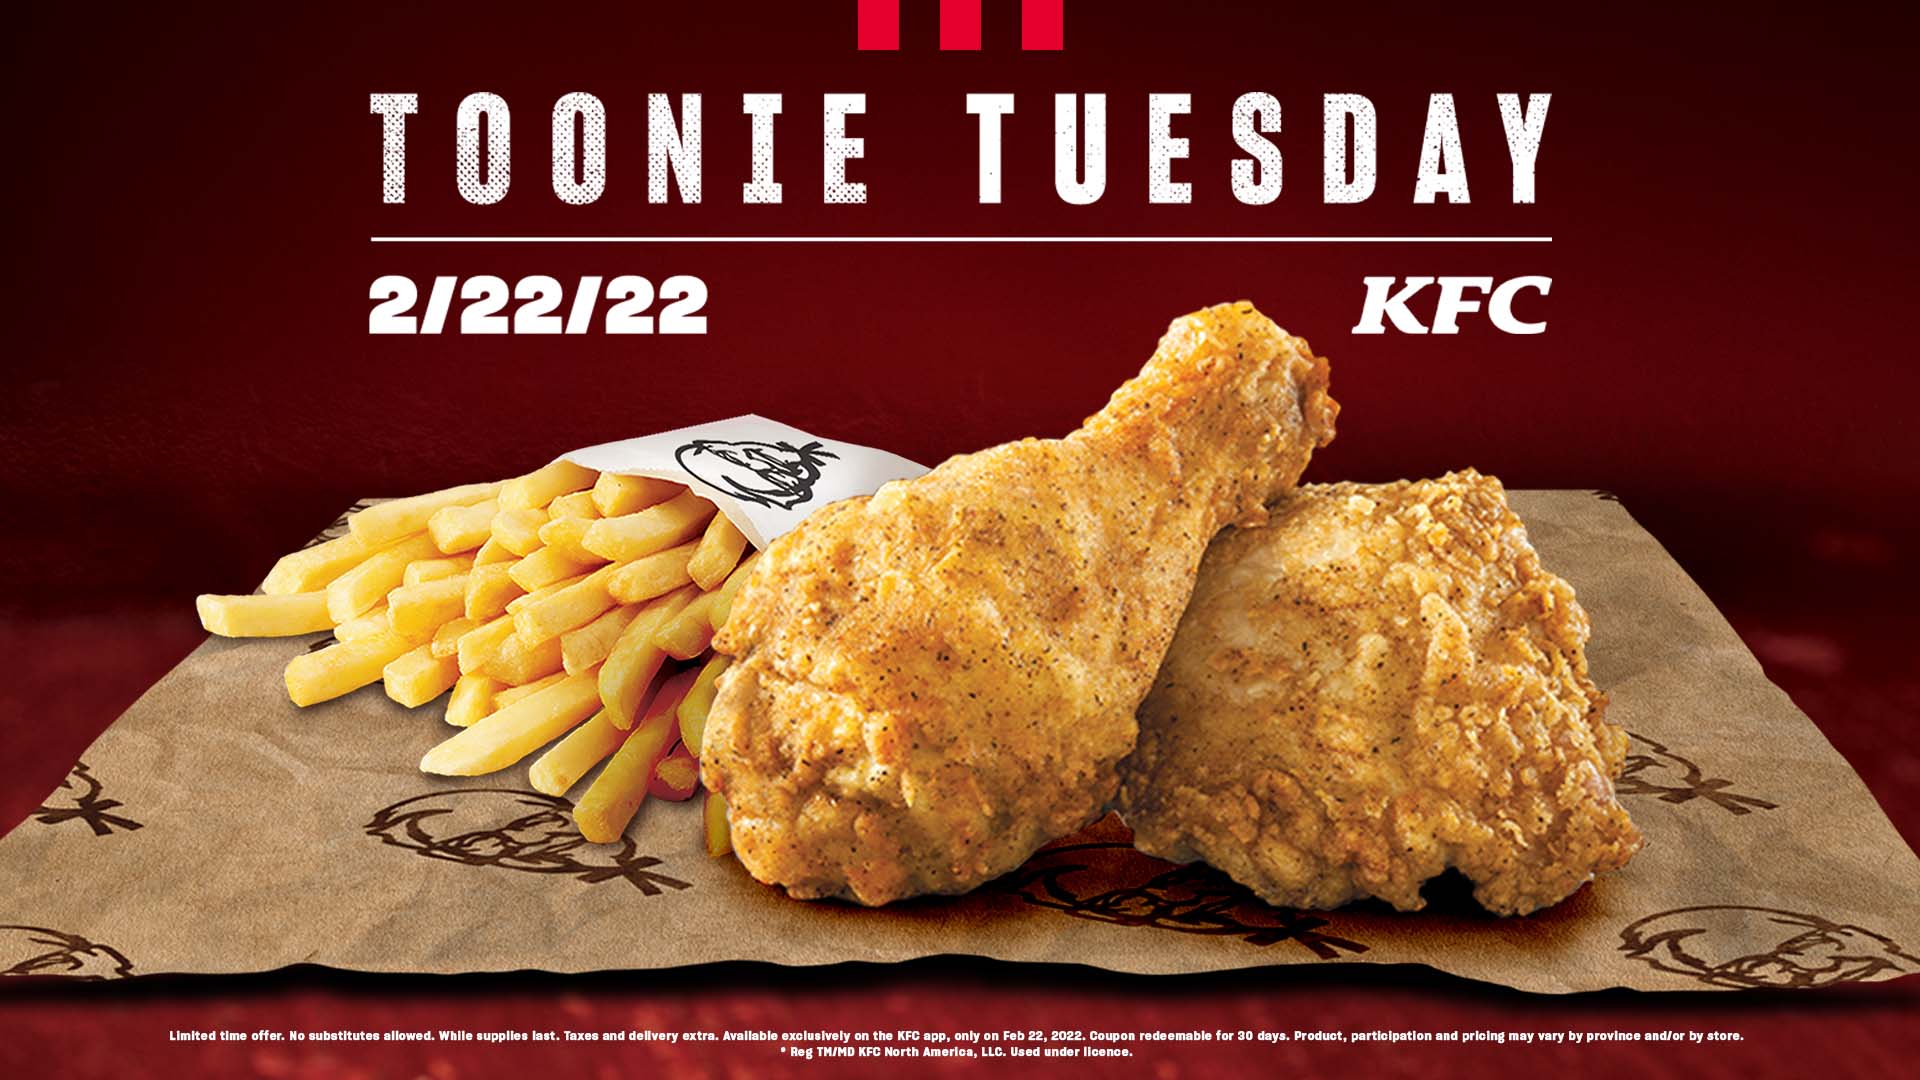 KFC Canada Toonie Tuesday back on 2/22/22 Foodology